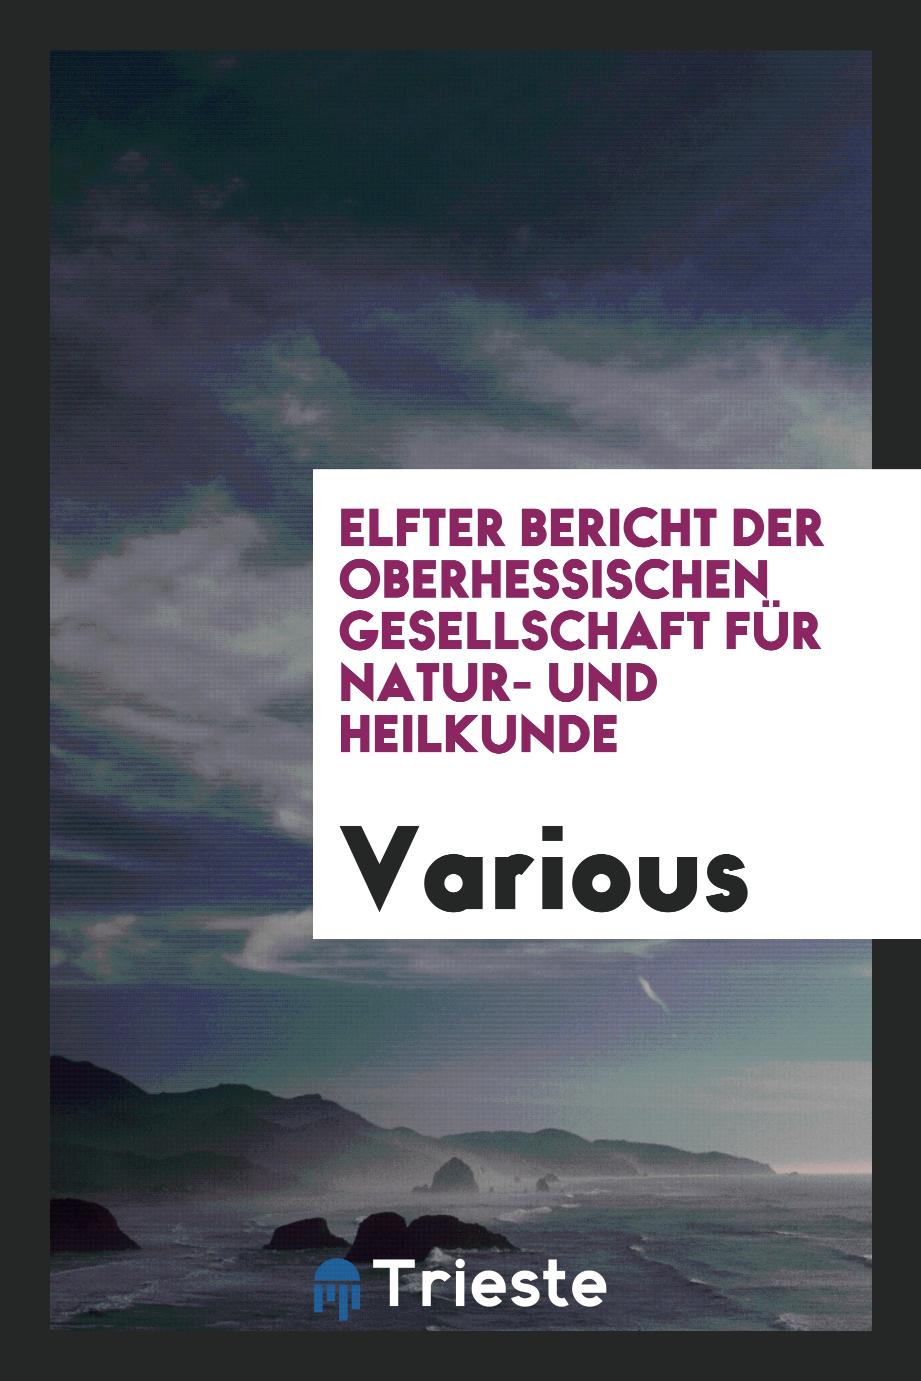 Elfter Bericht der Oberhessischen Gesellschaft für Natur- und Heilkunde